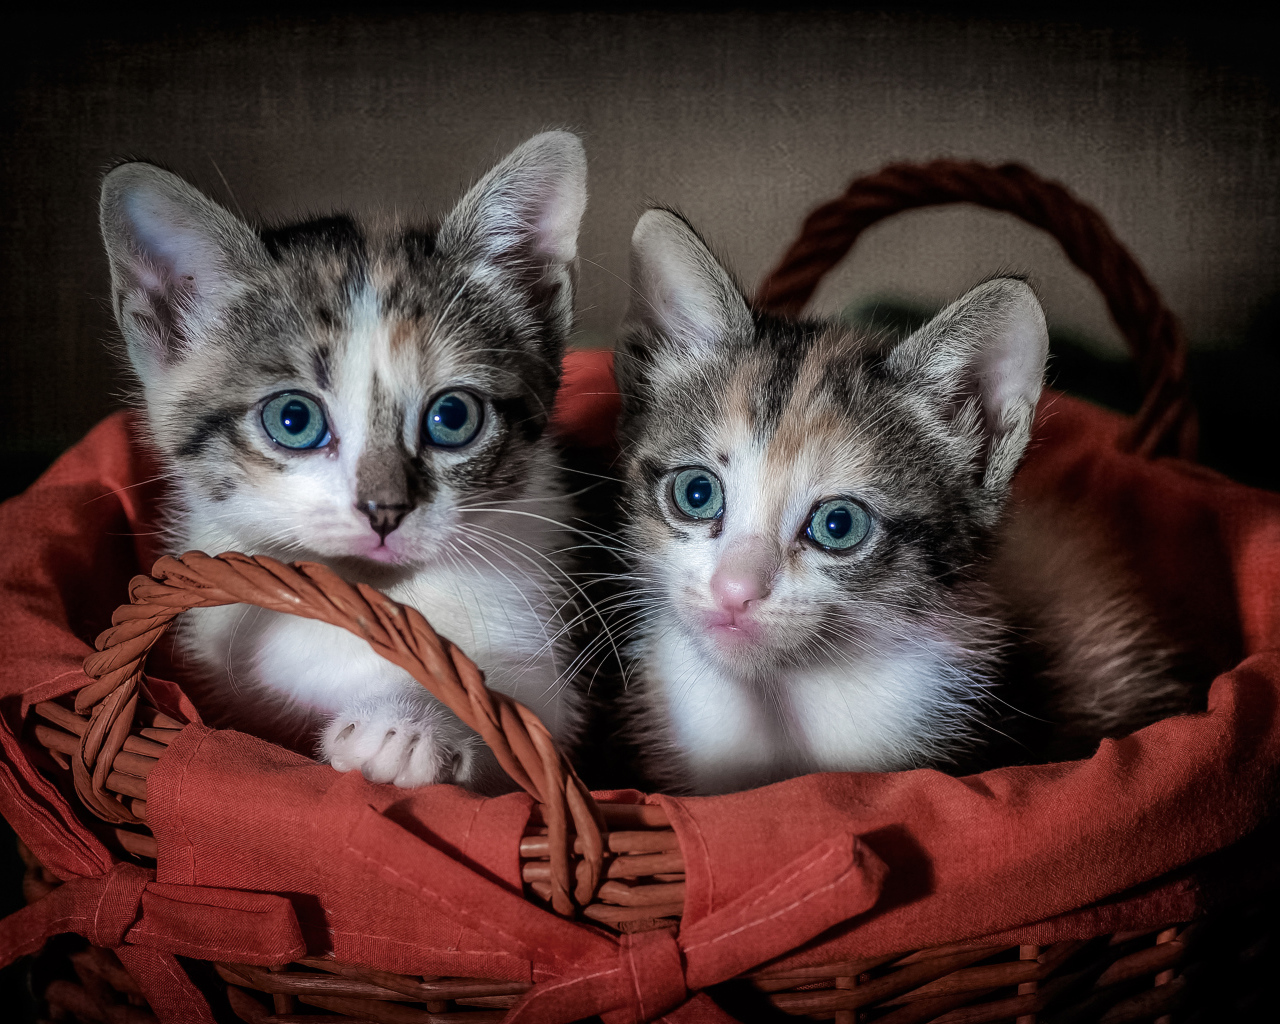 Два маленьких котенка в большой корзине 